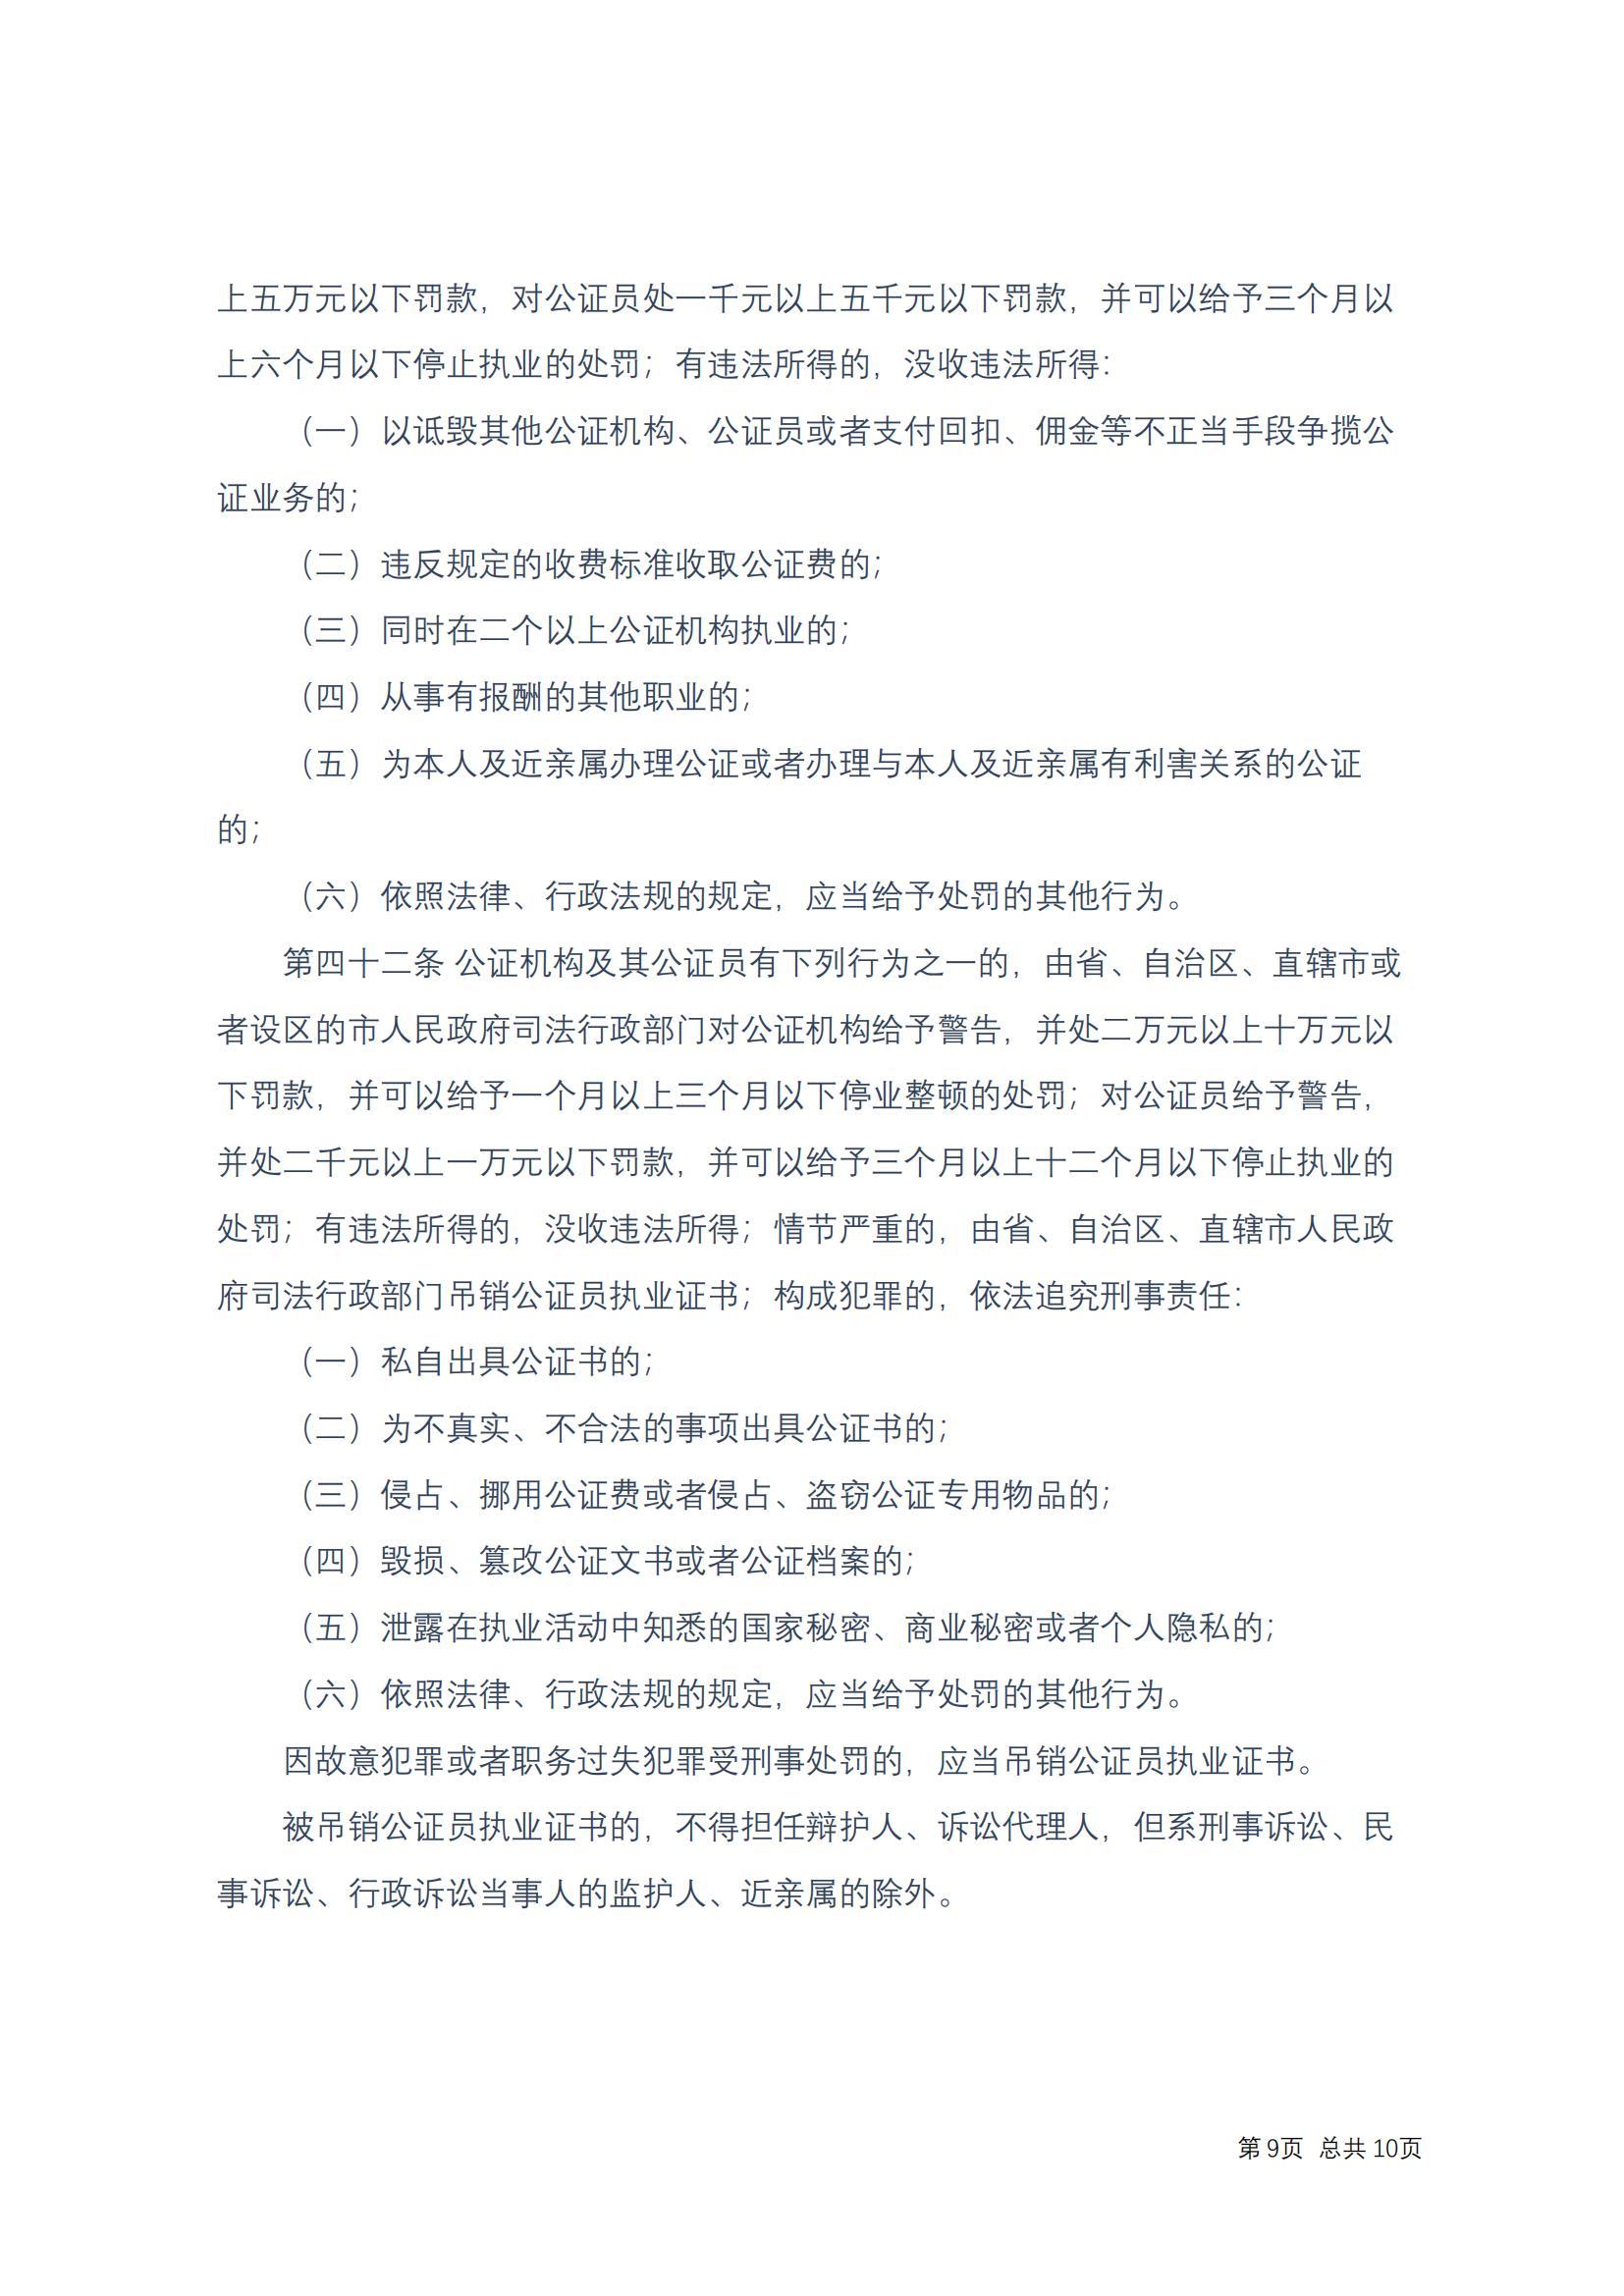 中华人民共和国公证法(2017修正)修改过_08